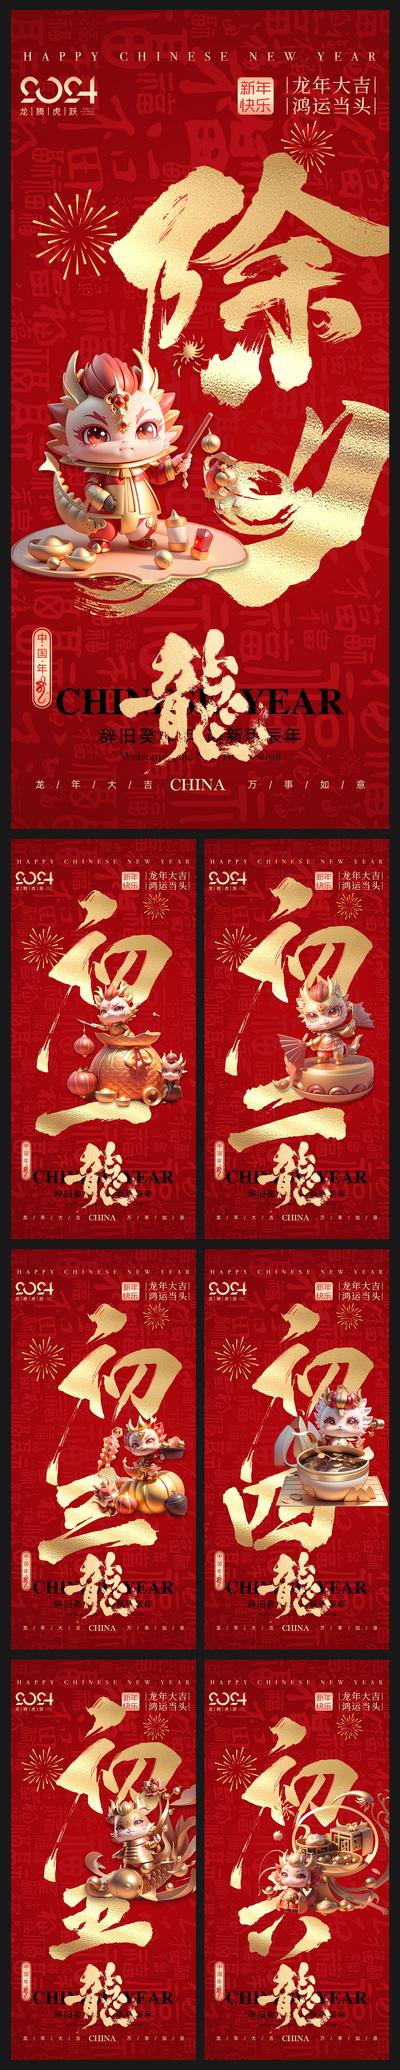 南门网 广告 海报 新年 春节 除夕 大年初一 初一 初七 拜年 年俗 年味 系列 龙年